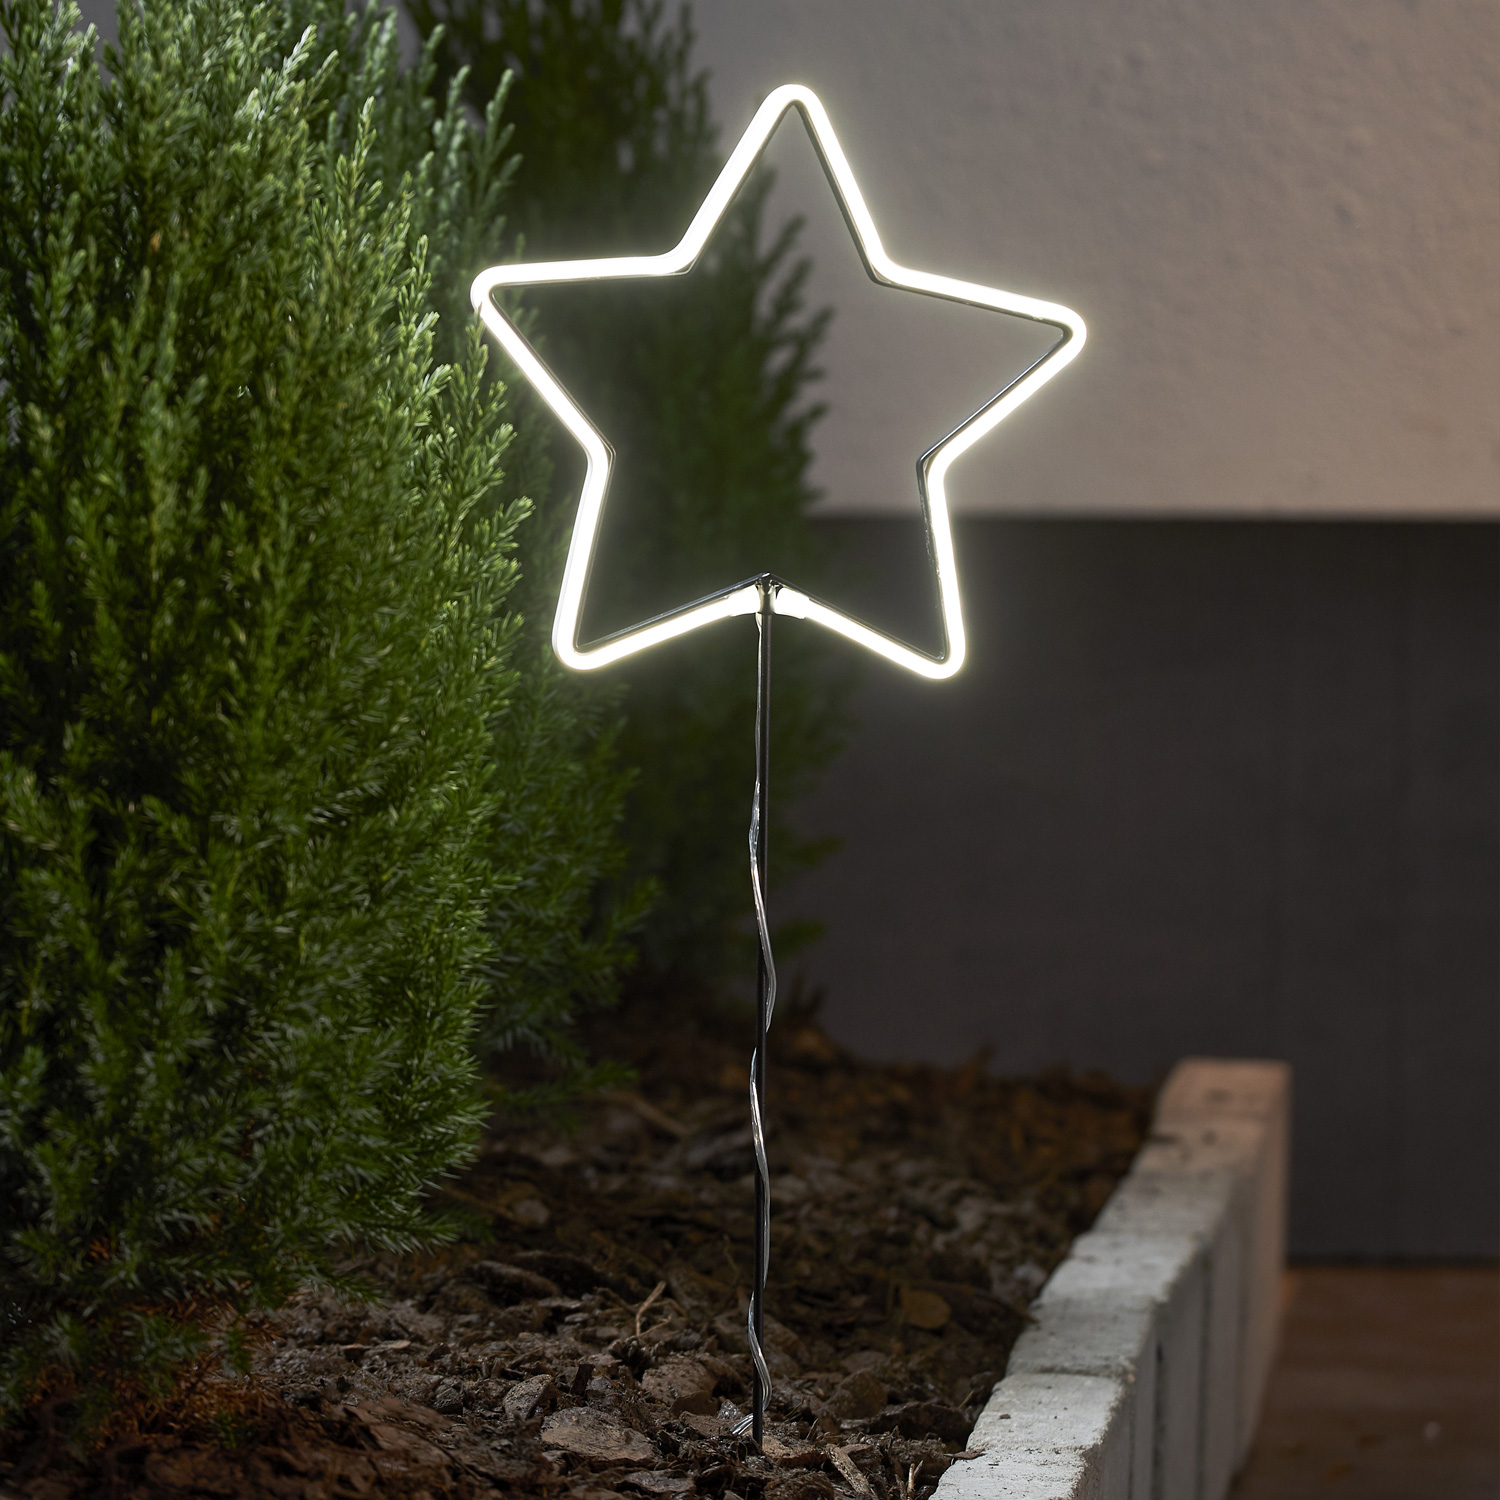 LED Lichterstern Neonstar- stehend - H: 58cm - 72 warmweiße LED - Timer - Batterie - Outdoor - weiß